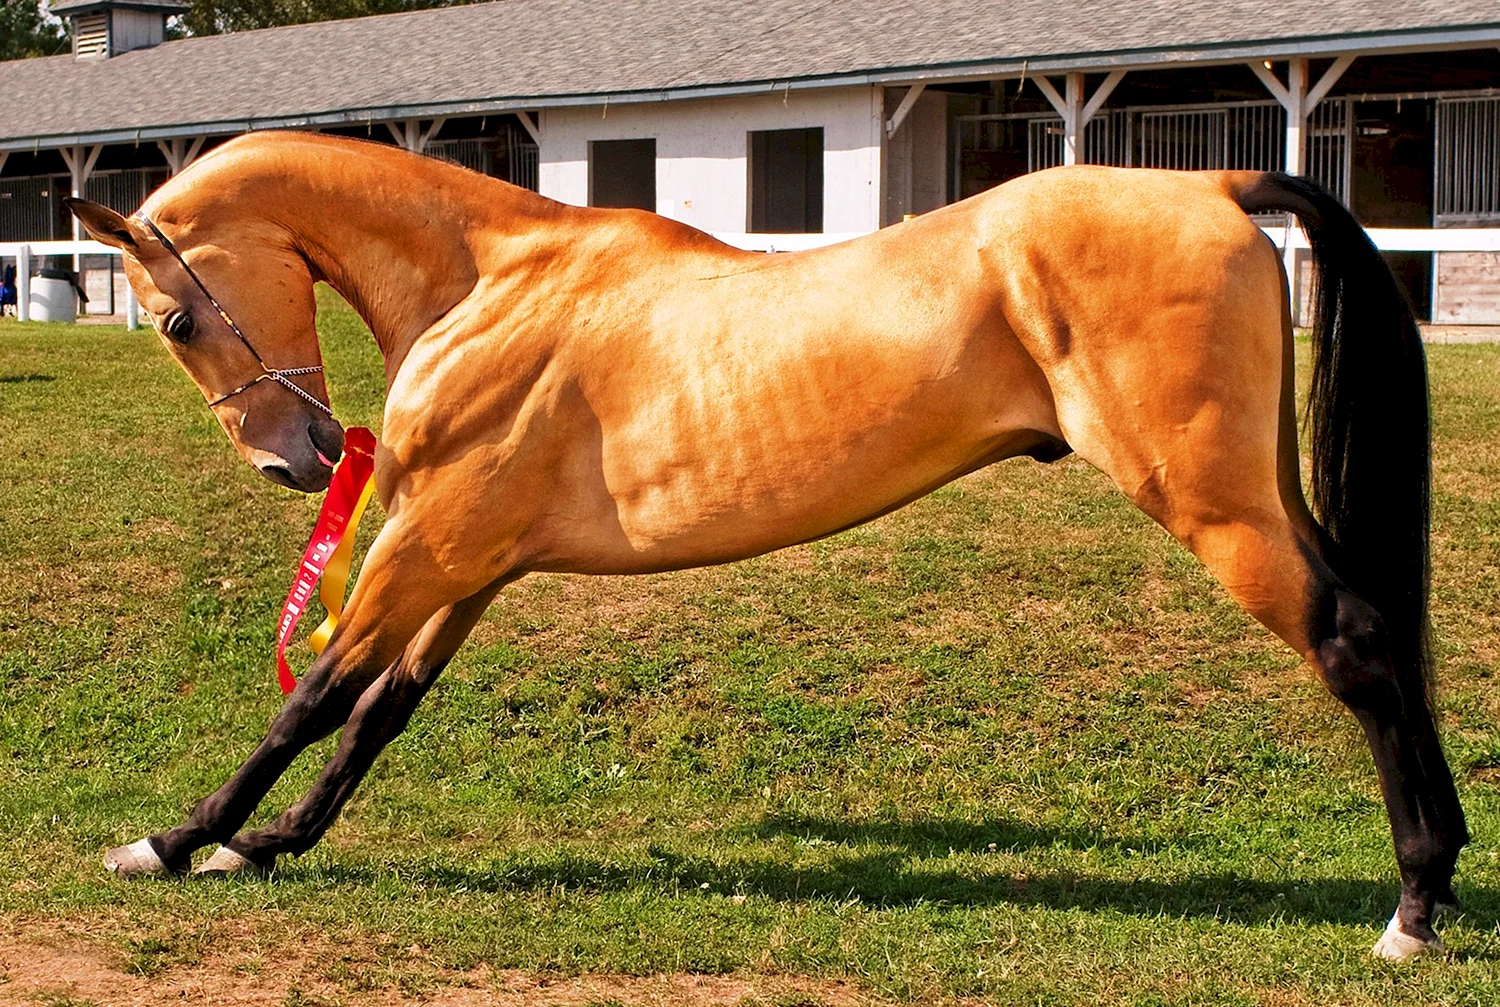 Ахалтекинская лошадь золотой масти